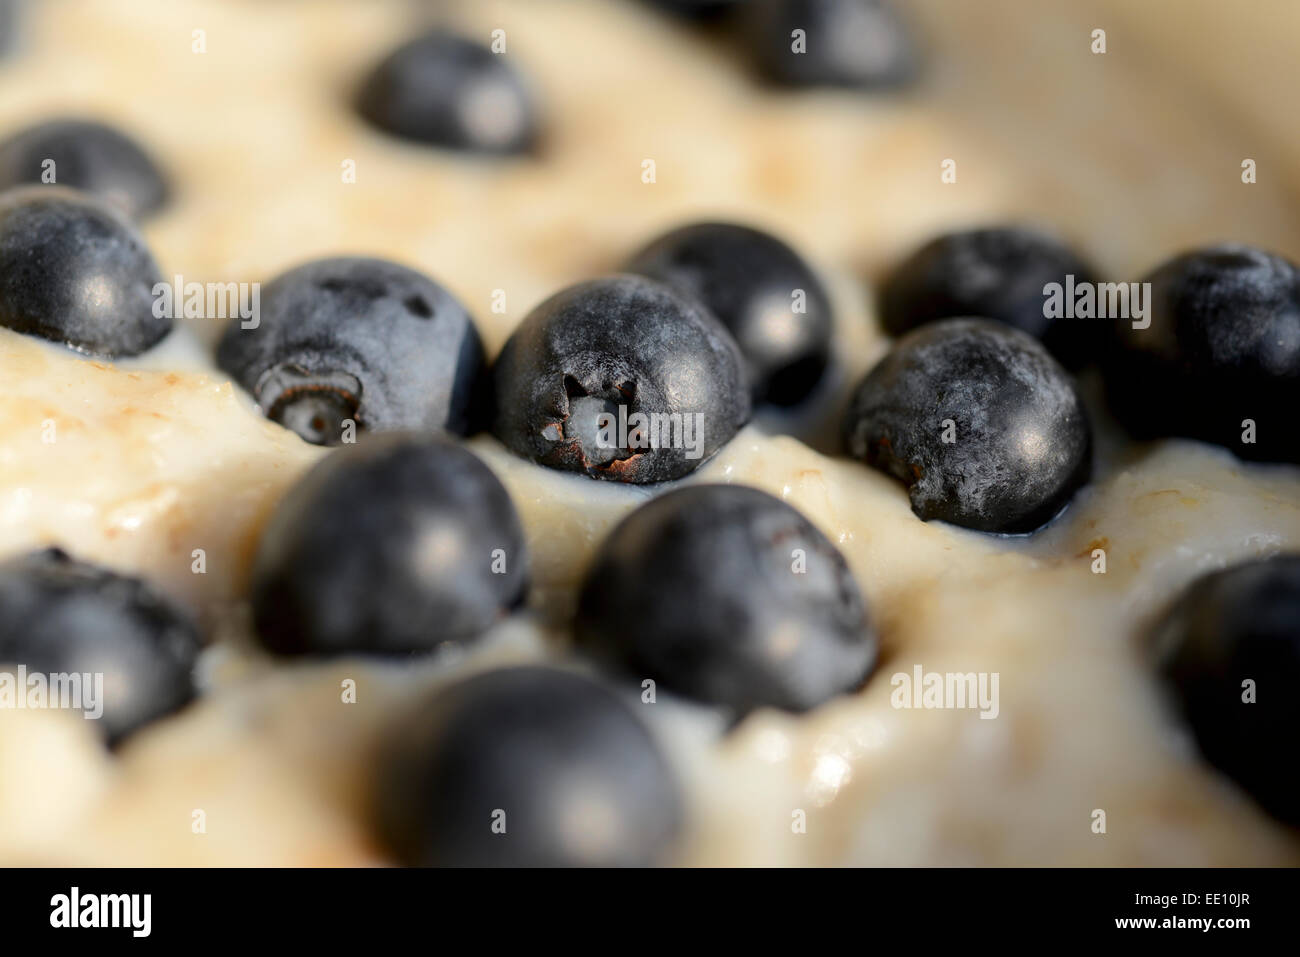 Eine geringe Tiefenschärfe Foto von Plumpen, Blaubeeren auf eine Schüssel mit schottischen Porridge Hafer, oder Haferflocken. Stockfoto